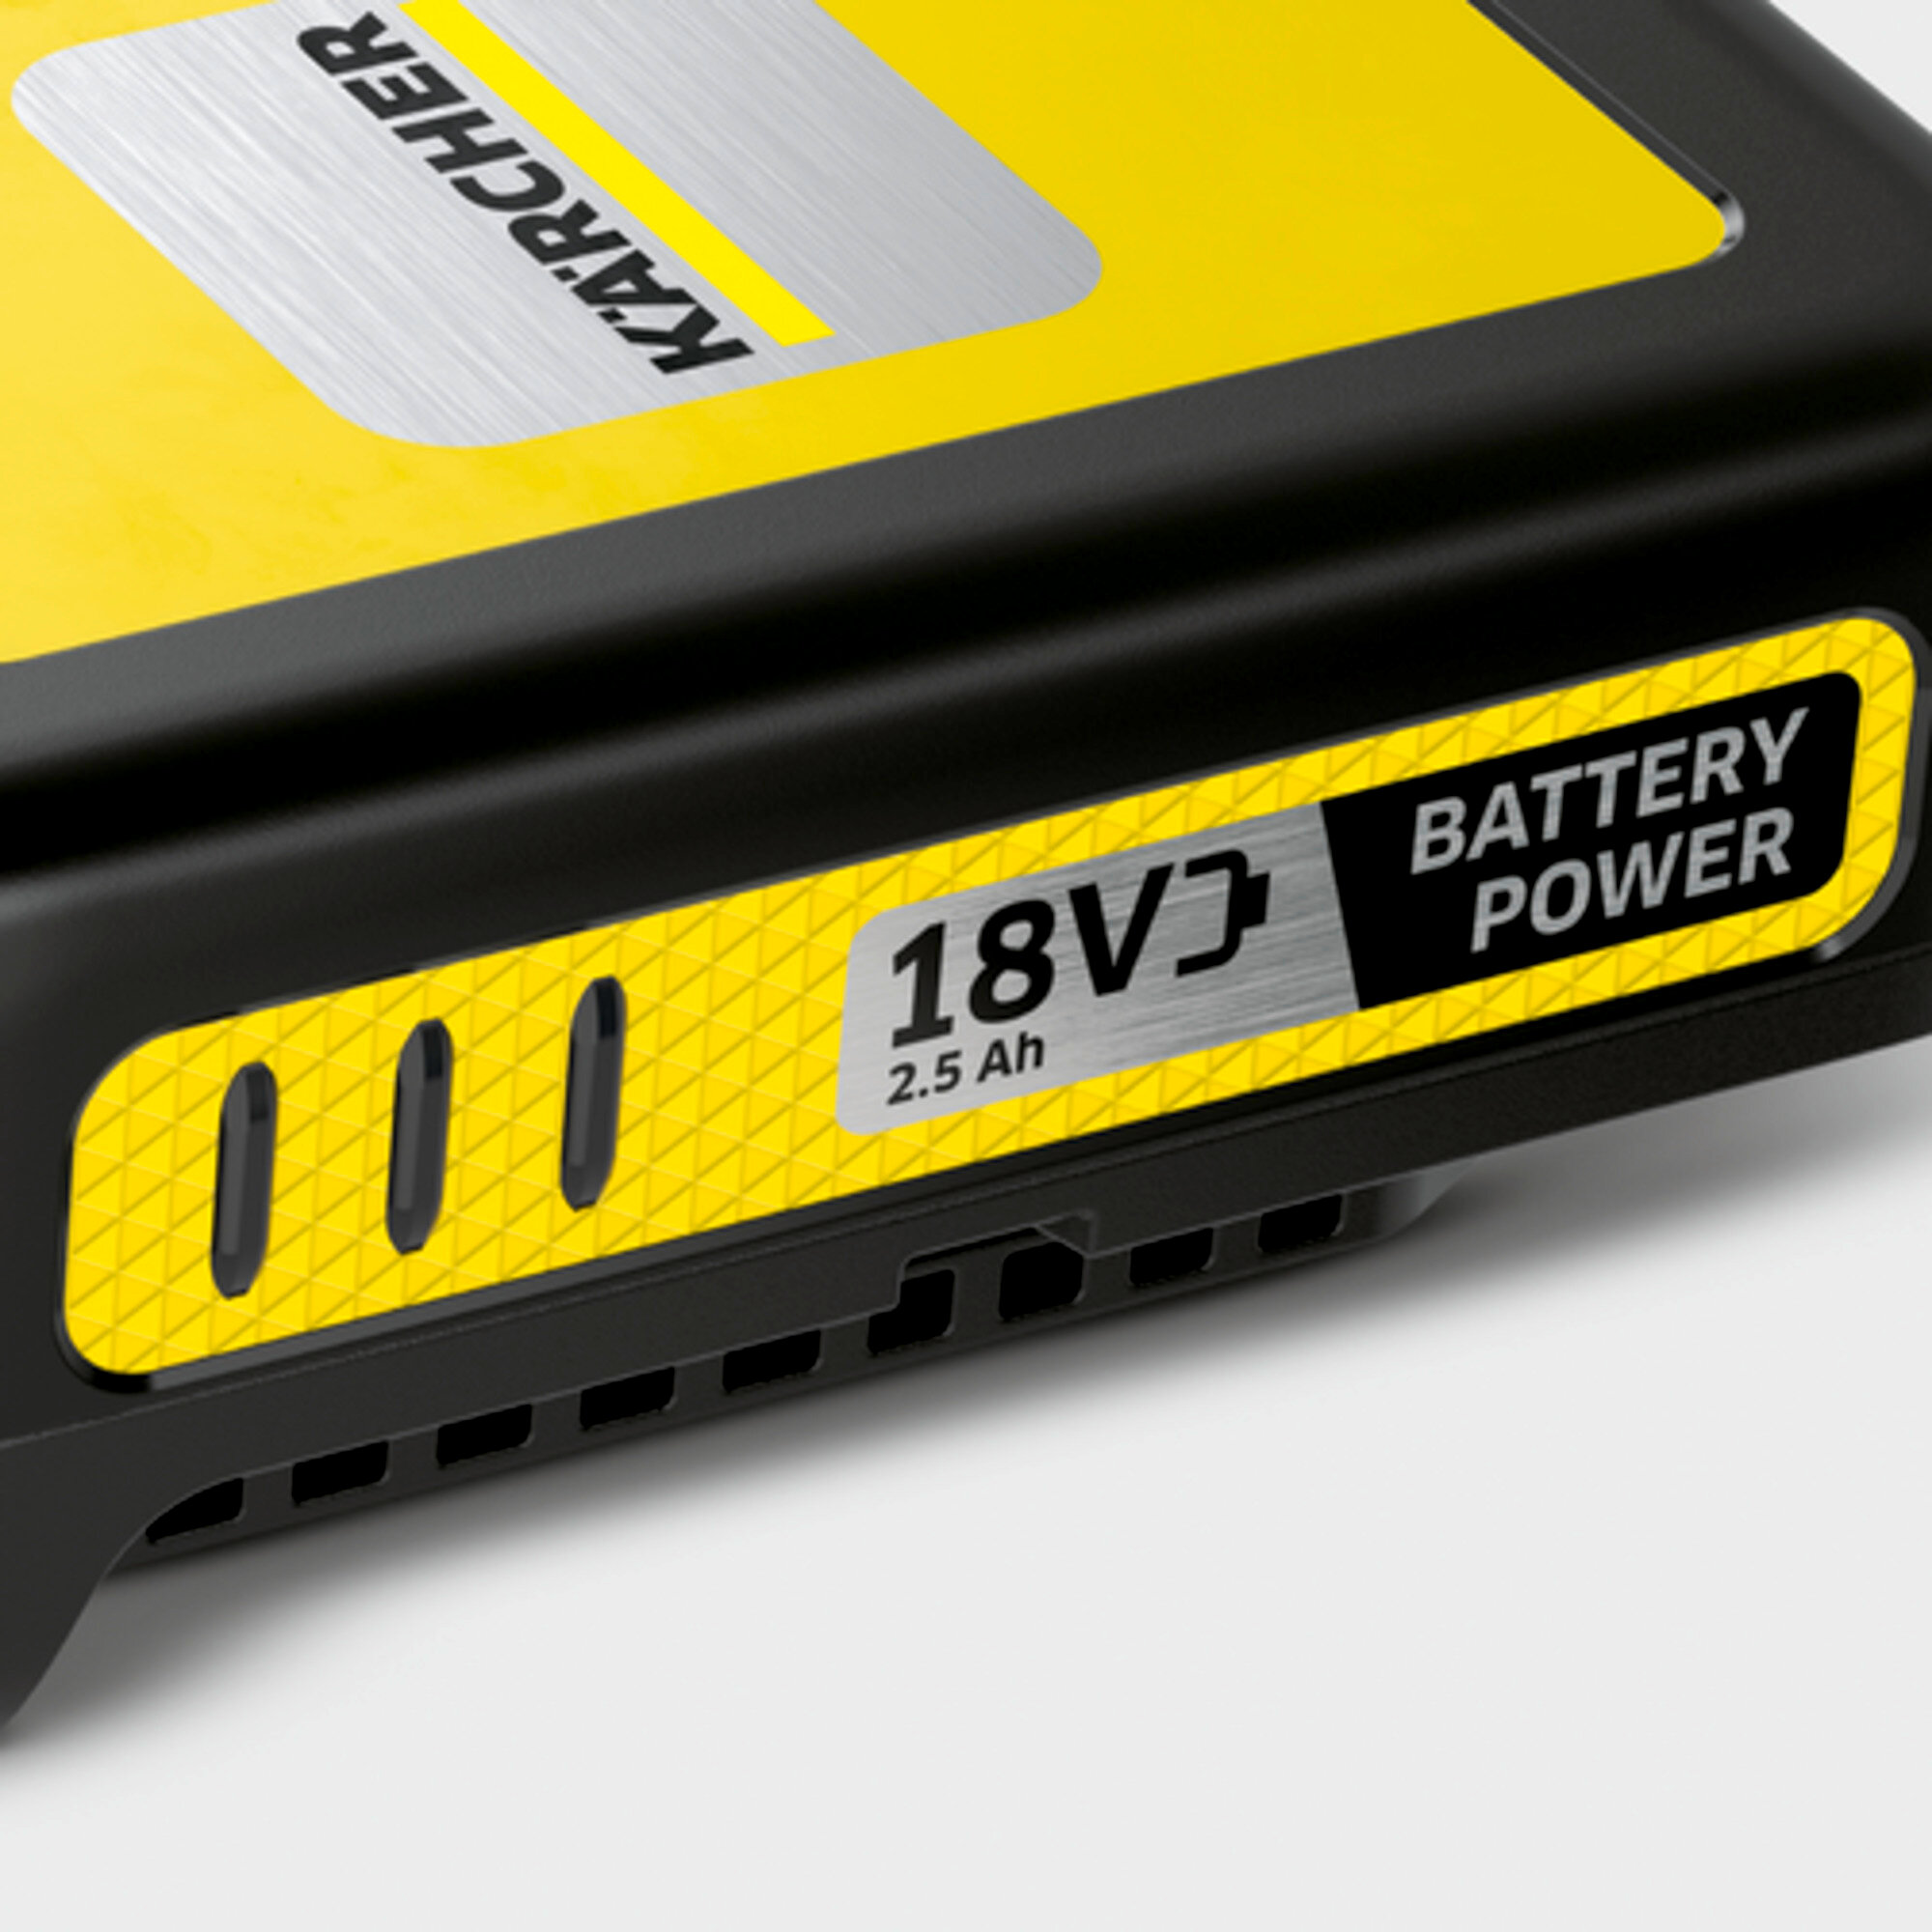  aloituspakkaus Battery Power 18/25: 18 V Battery Power vaihdettava akku